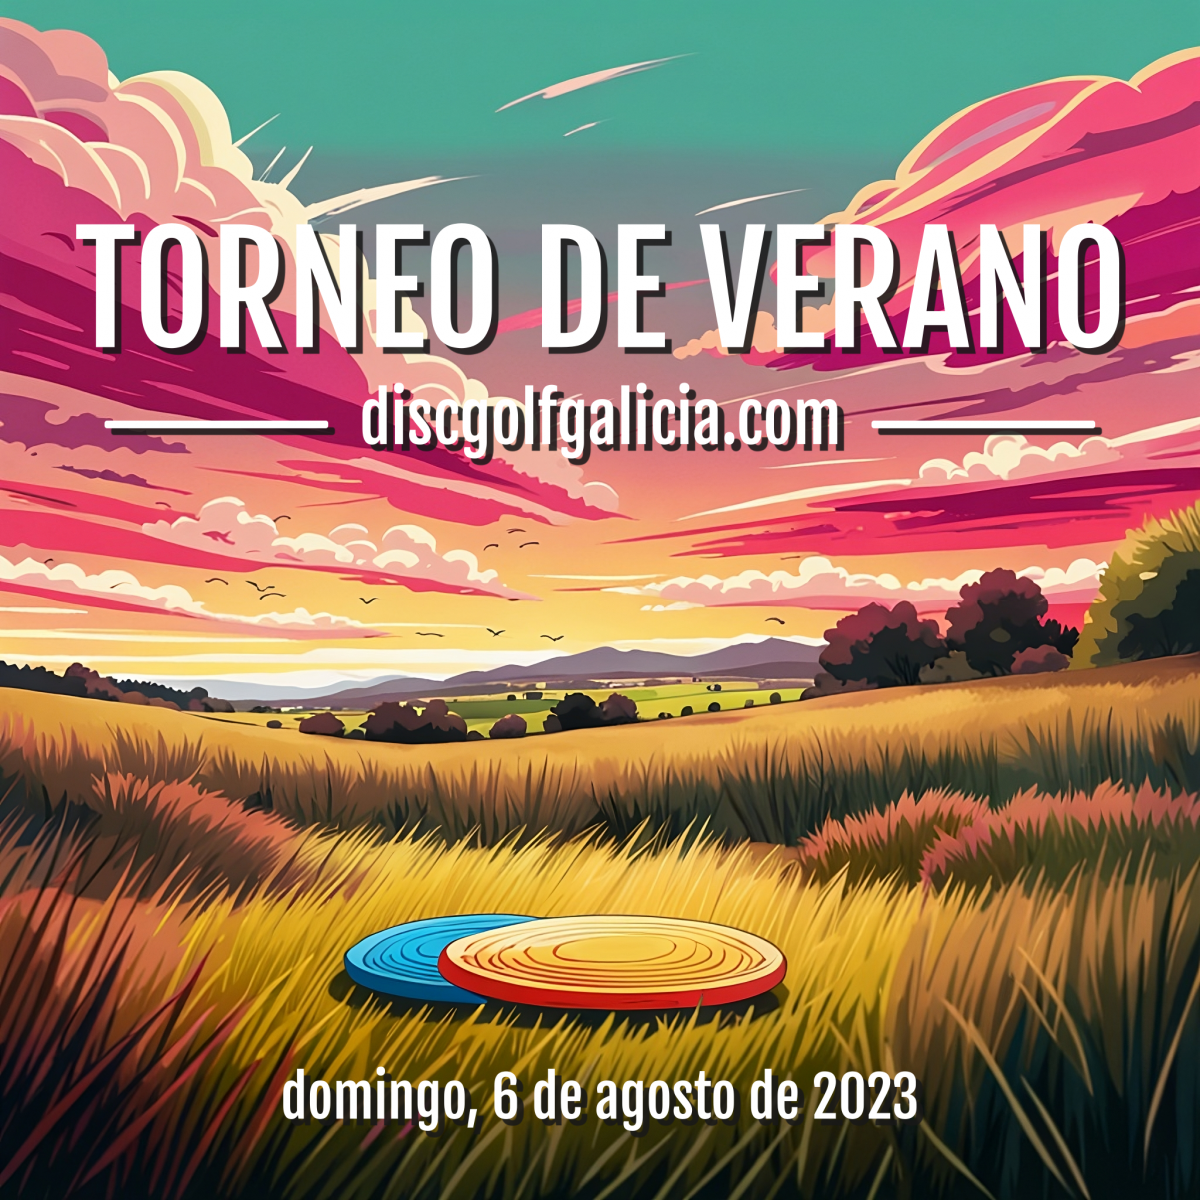 Torneo de Verano 2023 discgolfgalicia.com